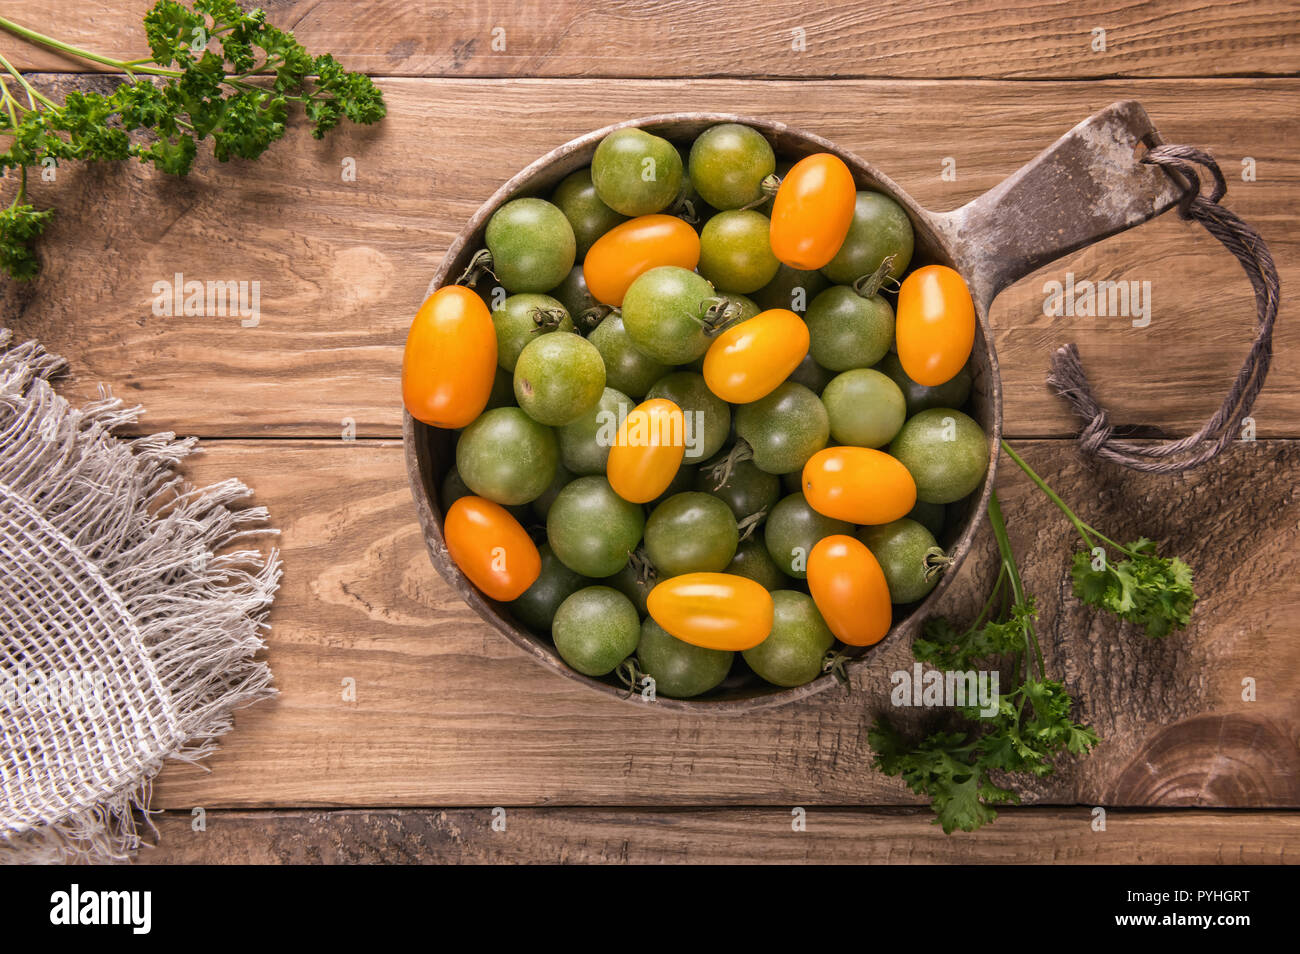 Lay piatto con verde e giallo arancione varietà di pomodoro nel recipiente rotondo sul legno strutturata la superficie del tavolo verde con foglie di prezzemolo. Messa a fuoco selettiva. Foto Stock